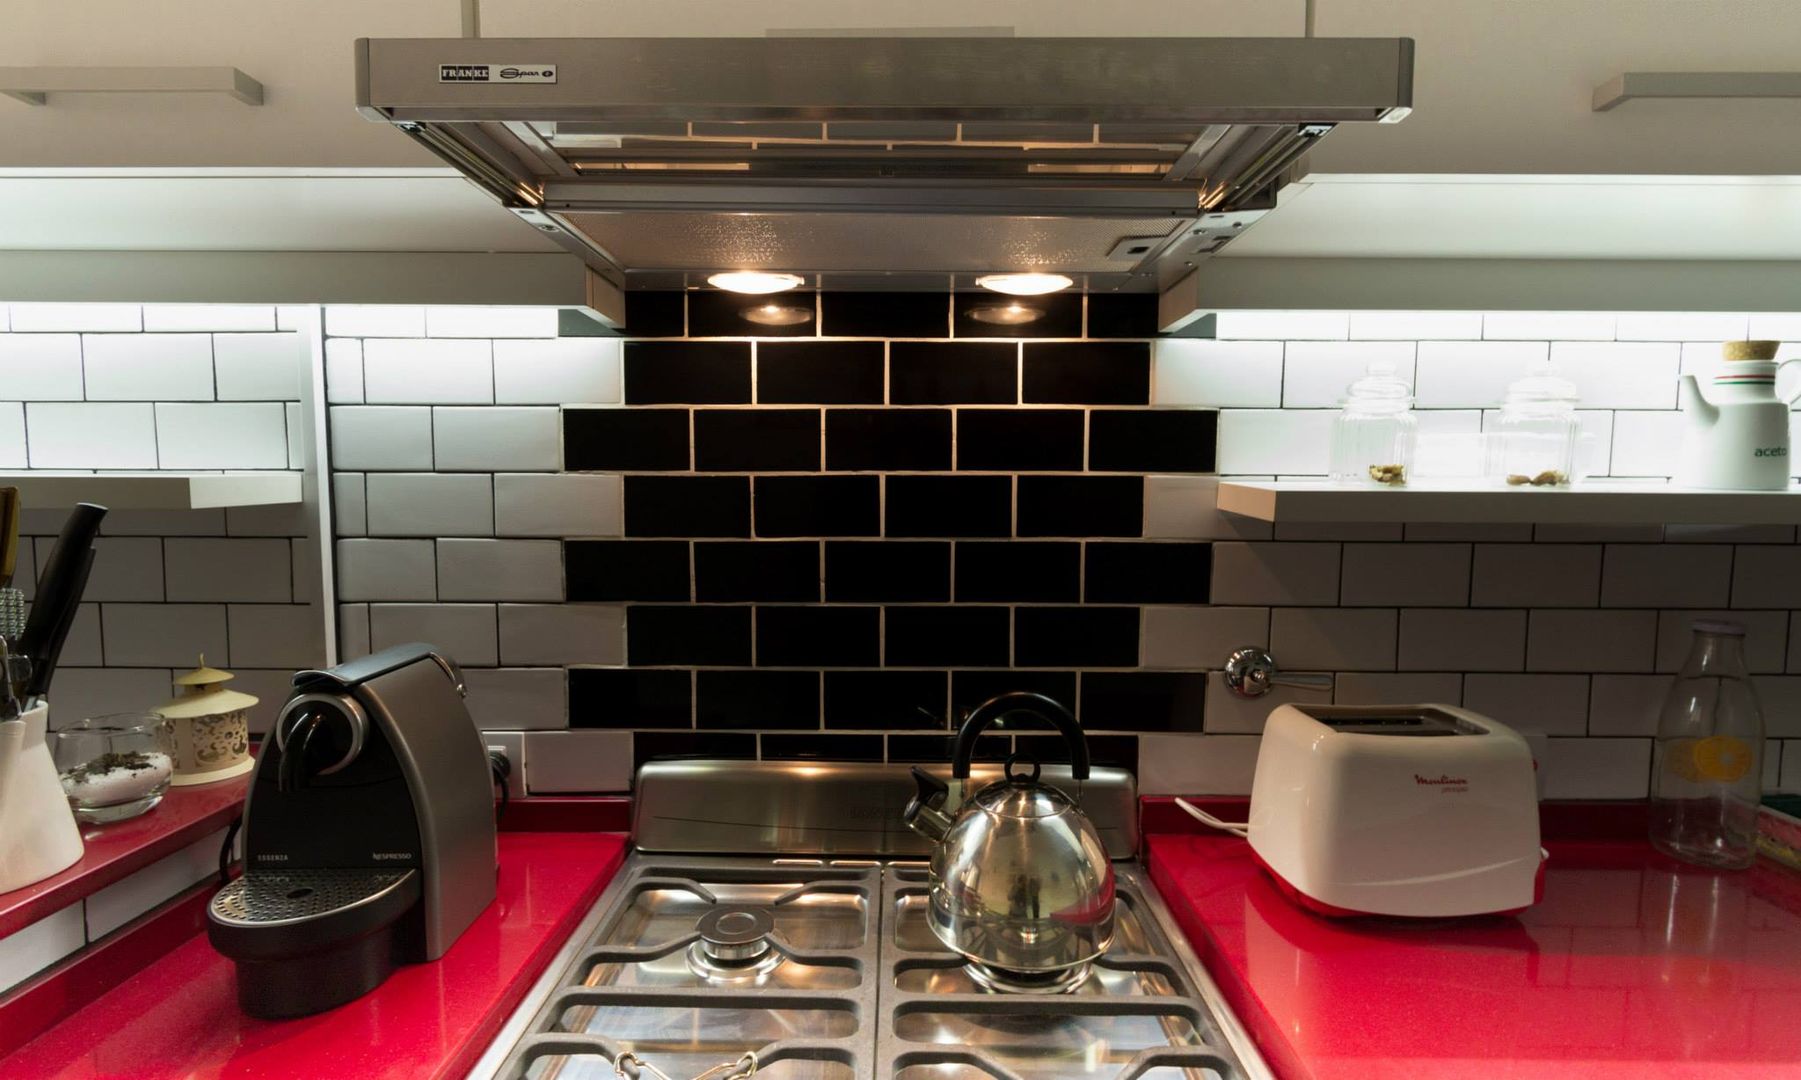 COCINA - SyP, Vorm Vorm Modern style kitchen Bench tops